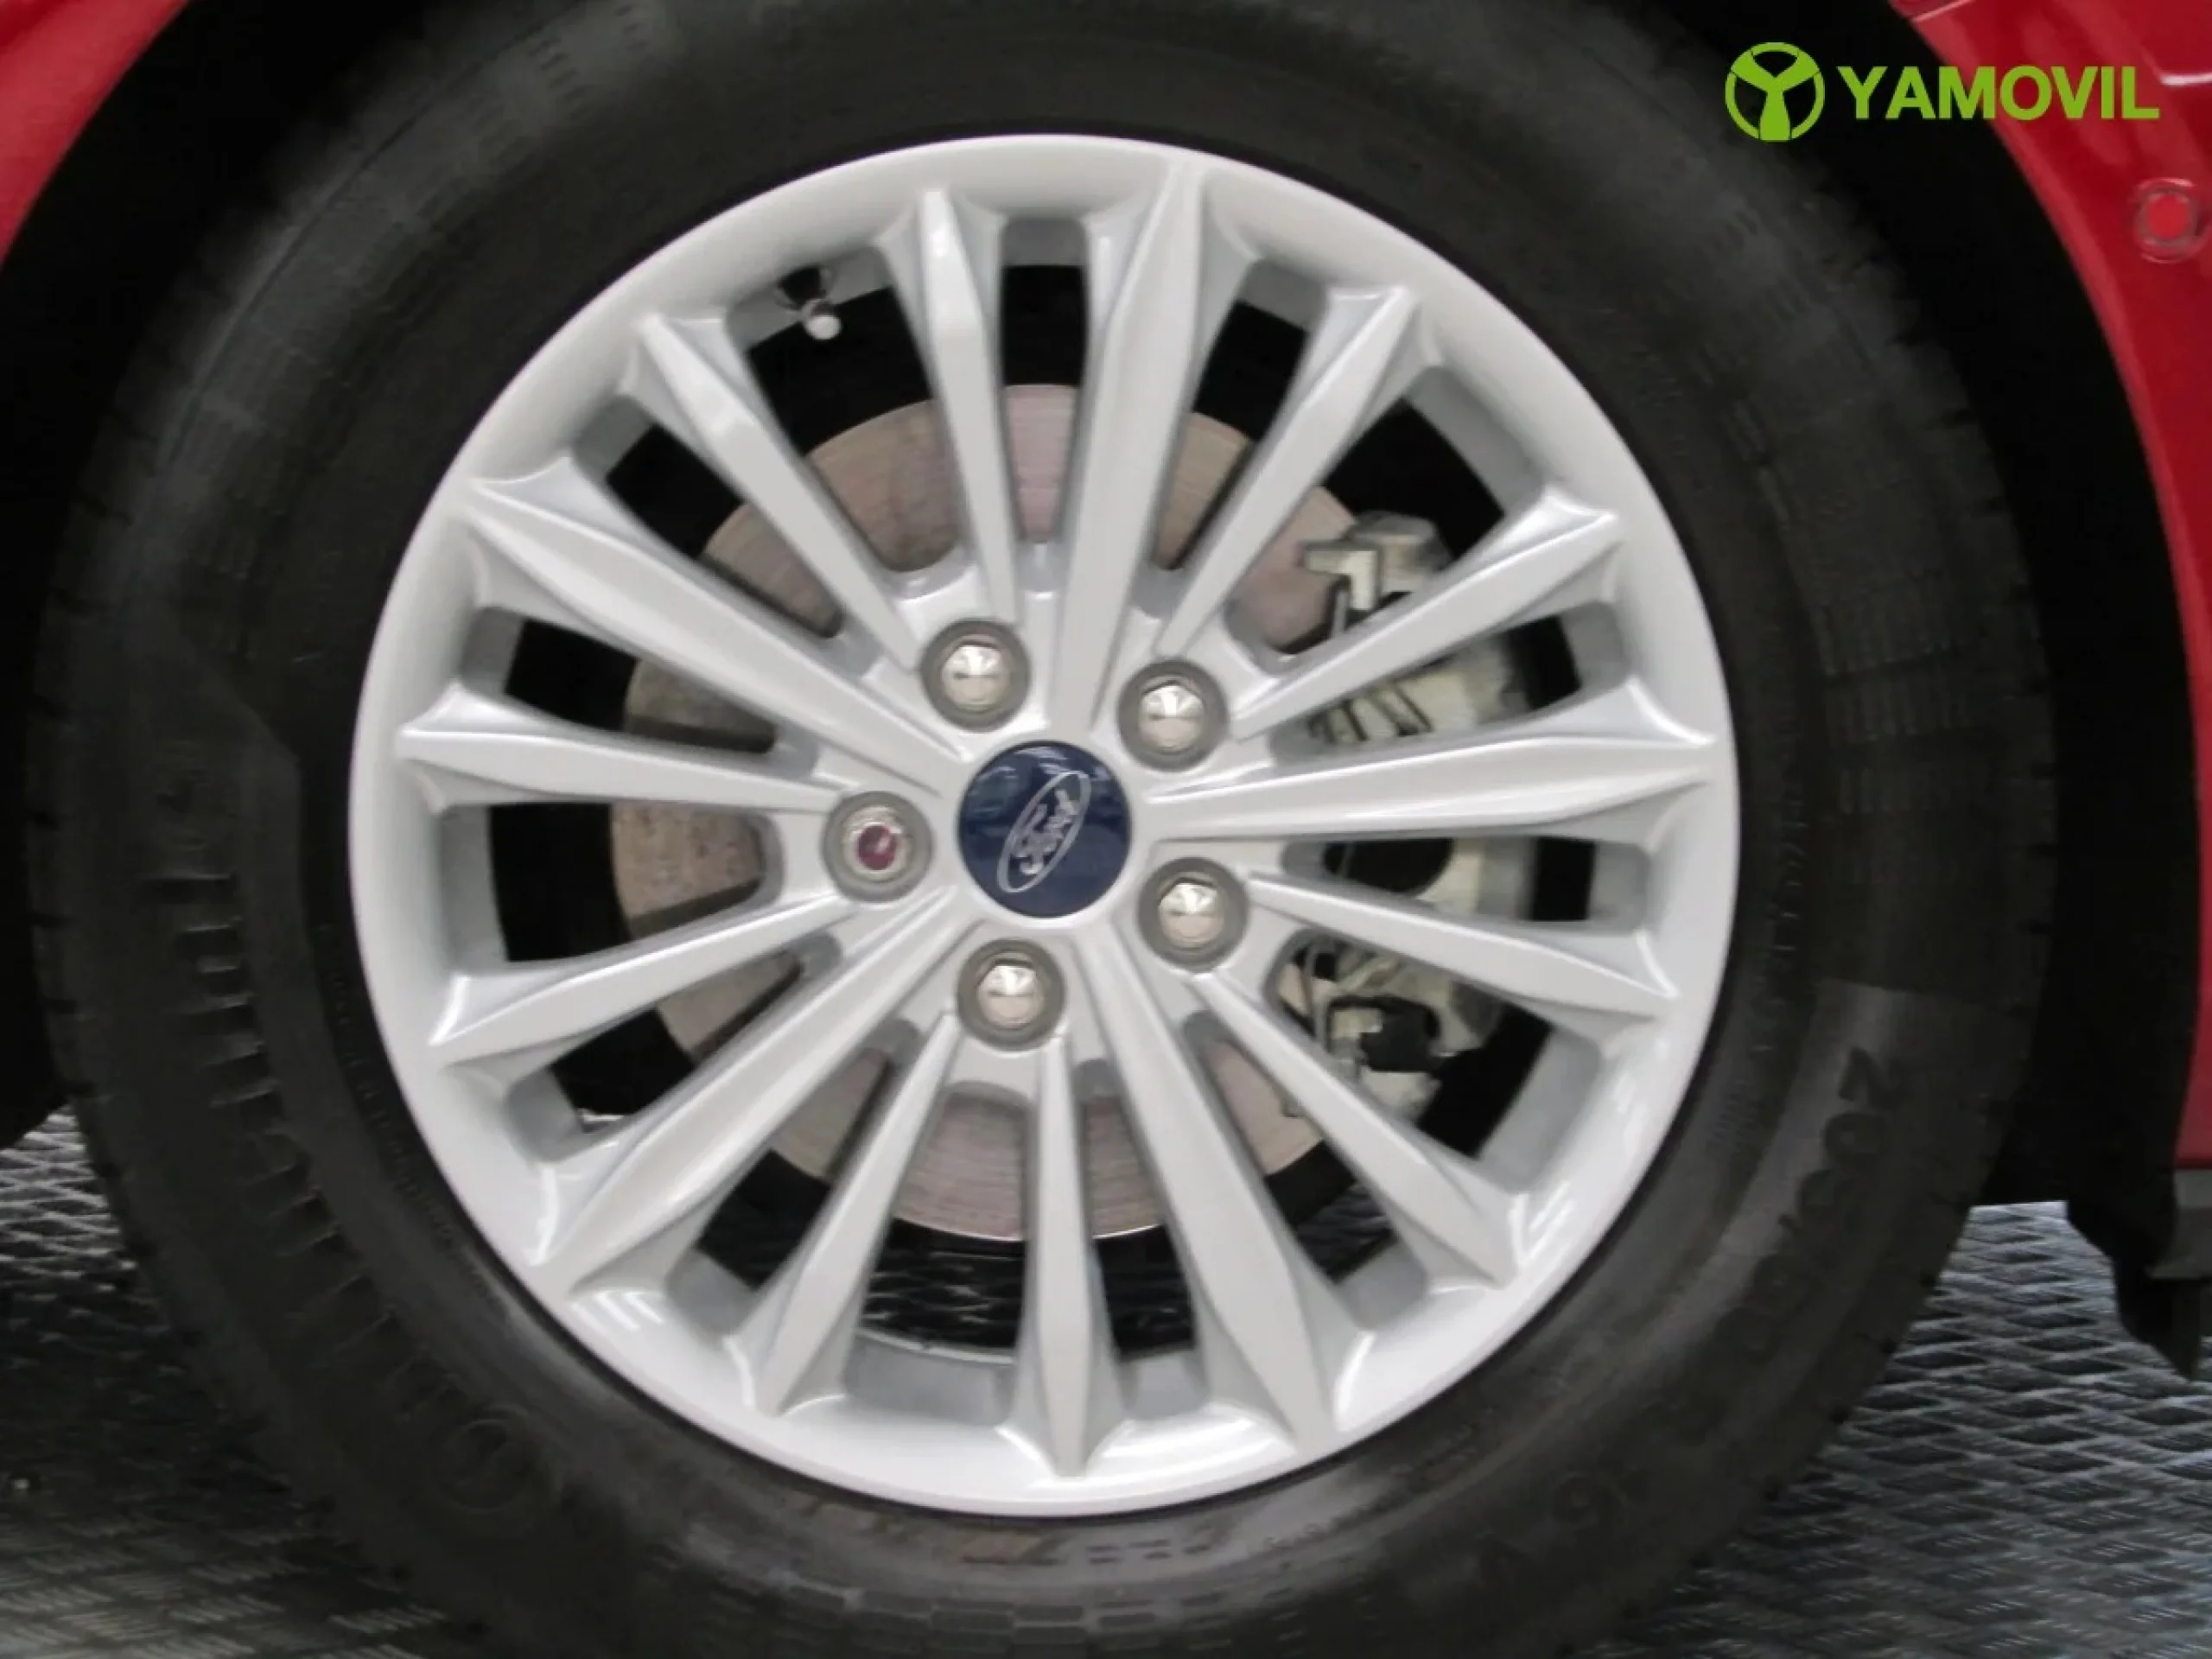 Ford Focus 1.0 Ecoboost Titanium Powershift 92 kW (125 CV) - Foto 9